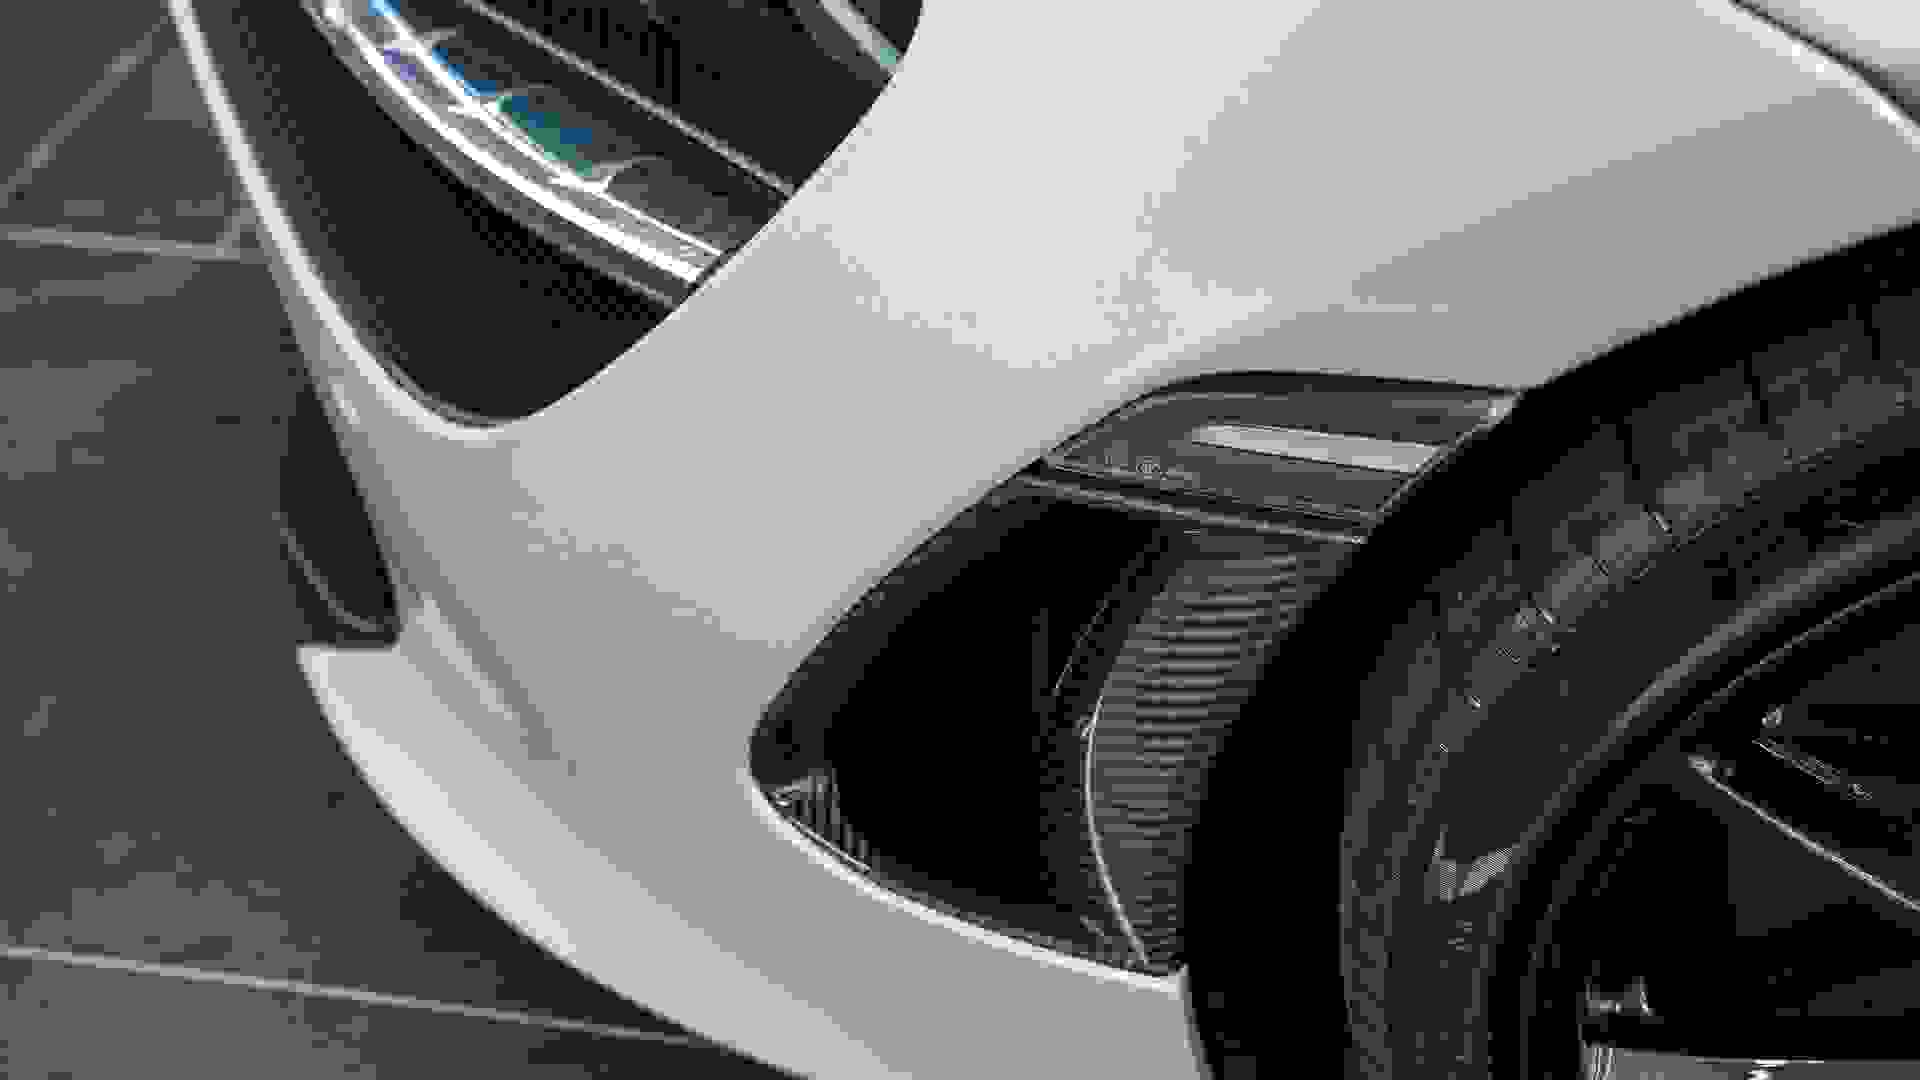 McLaren 720S Photo 6f4c624d-cc39-4d1d-a1c9-ed250cb0b98a.jpg